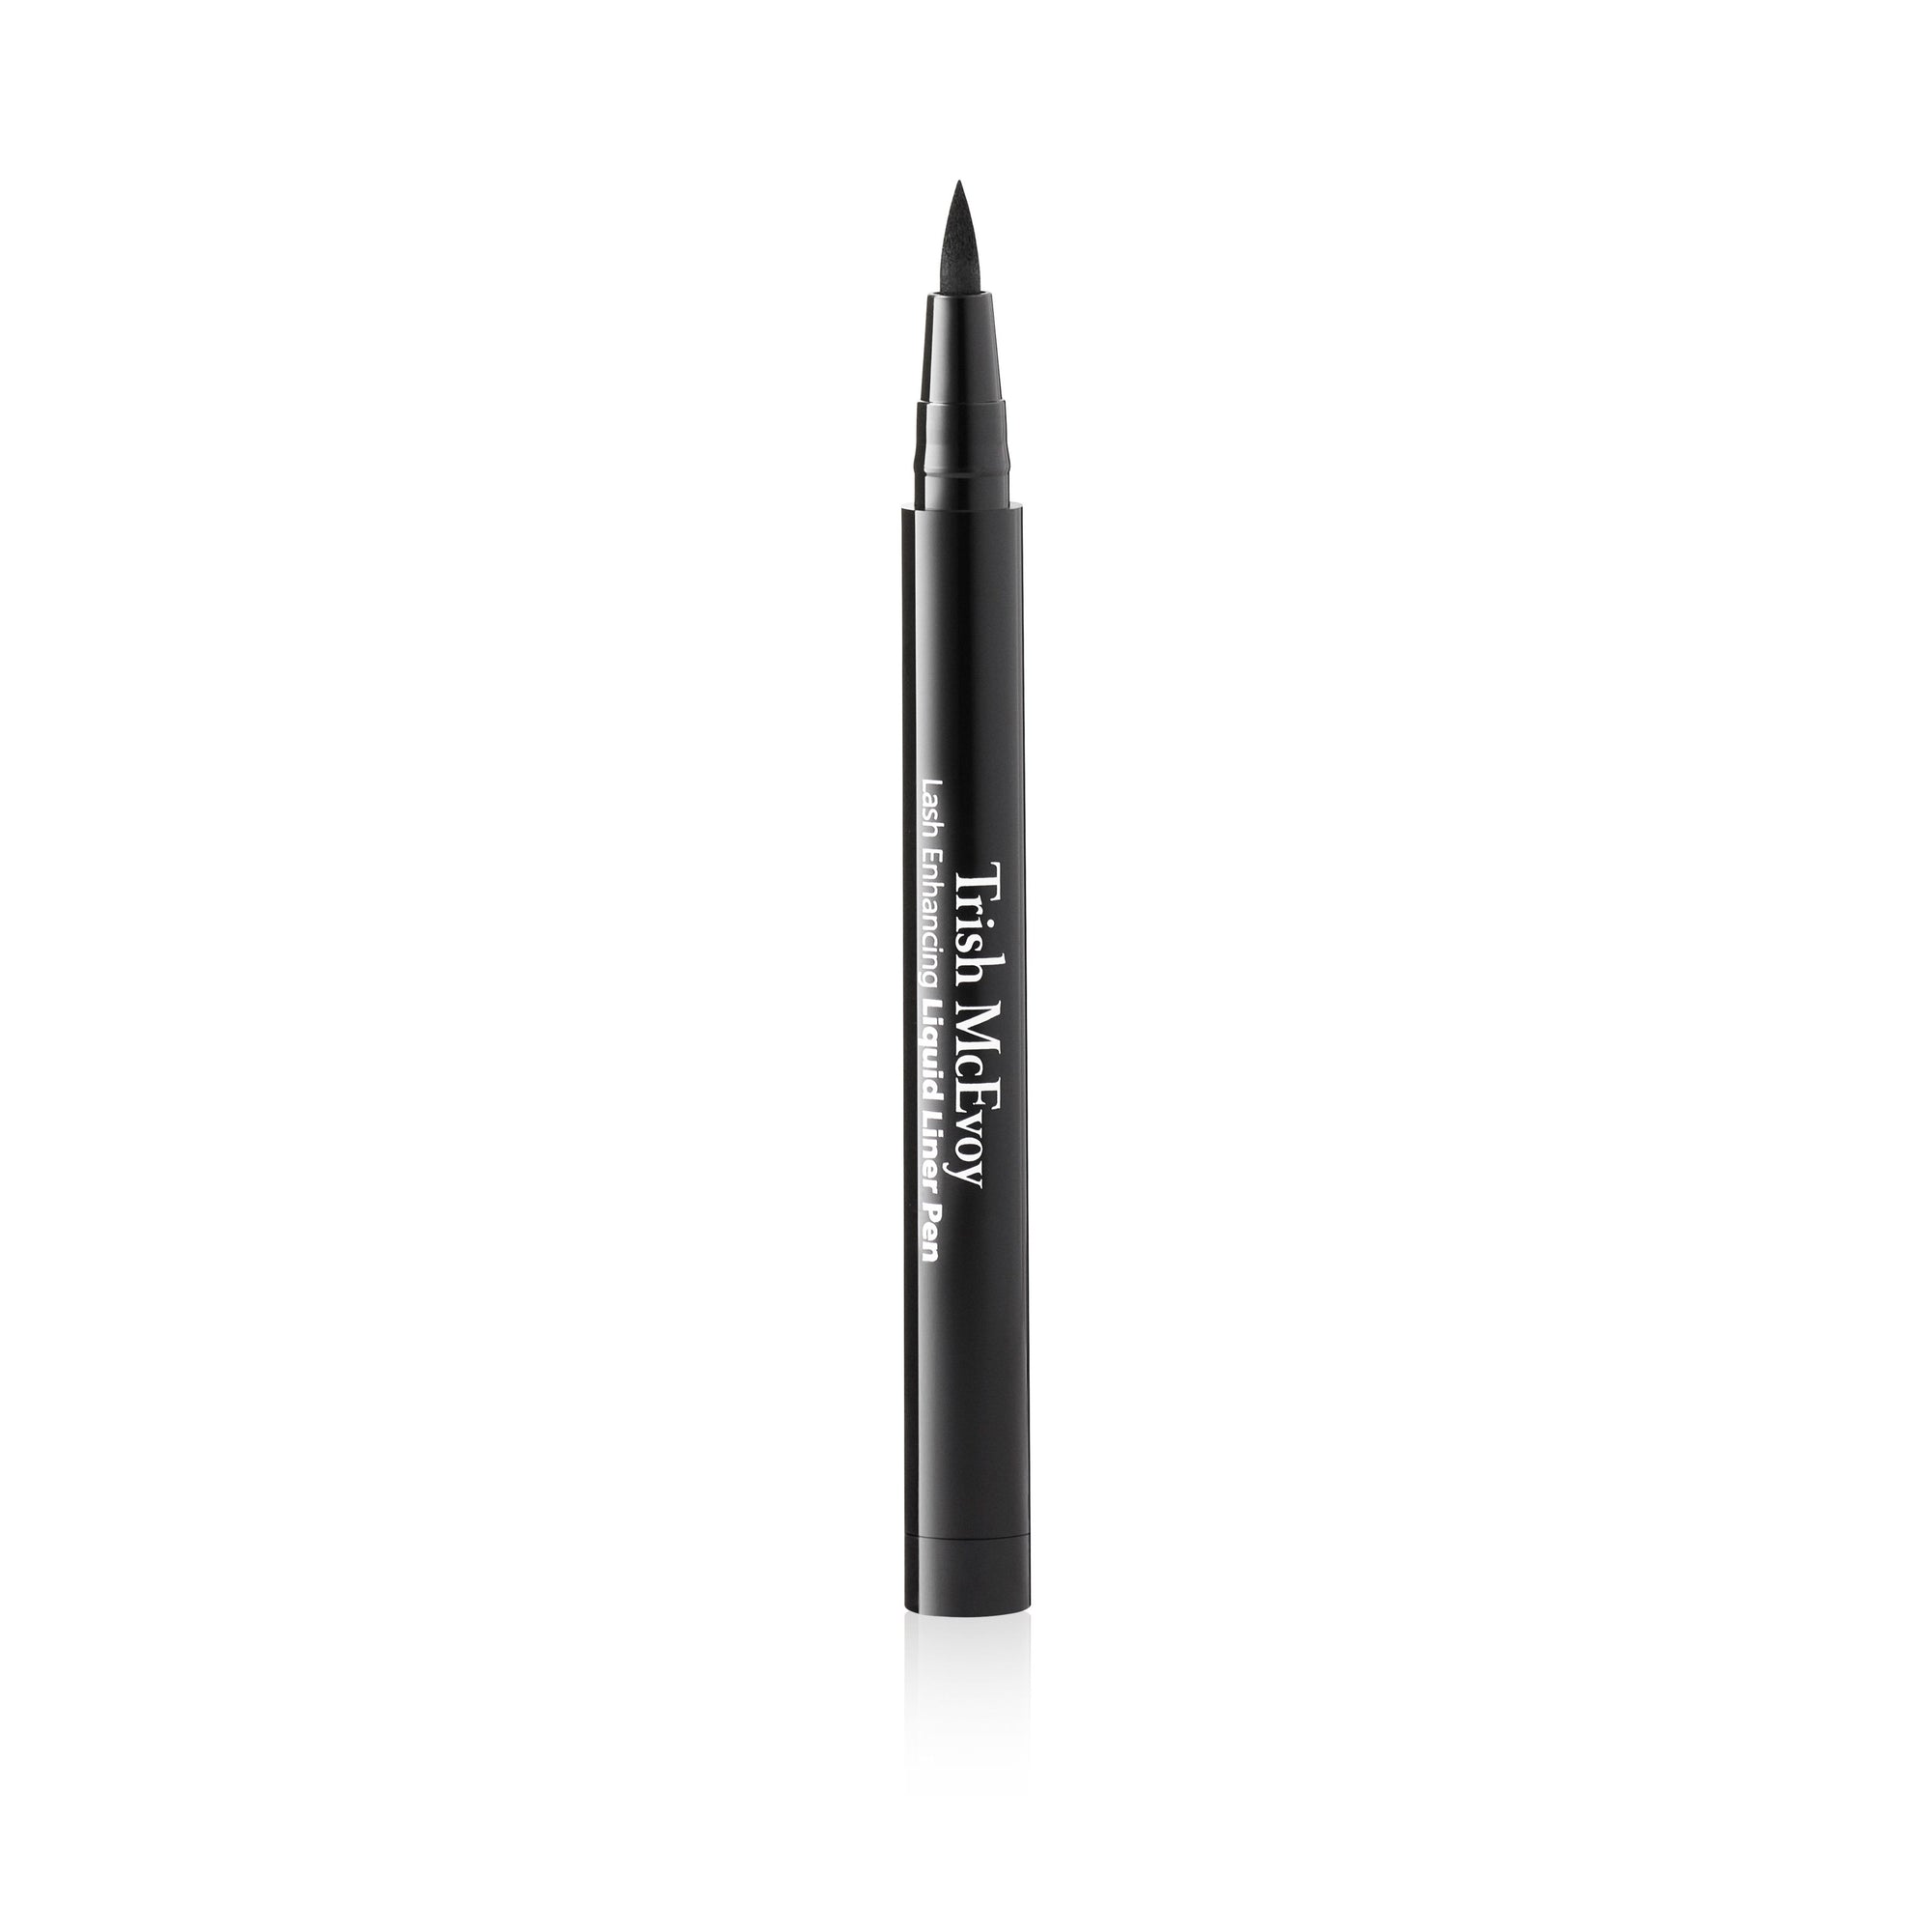 Signature De Chanel Intense Longwear Eyeliner Pen - # 10 Noir 0.5ml